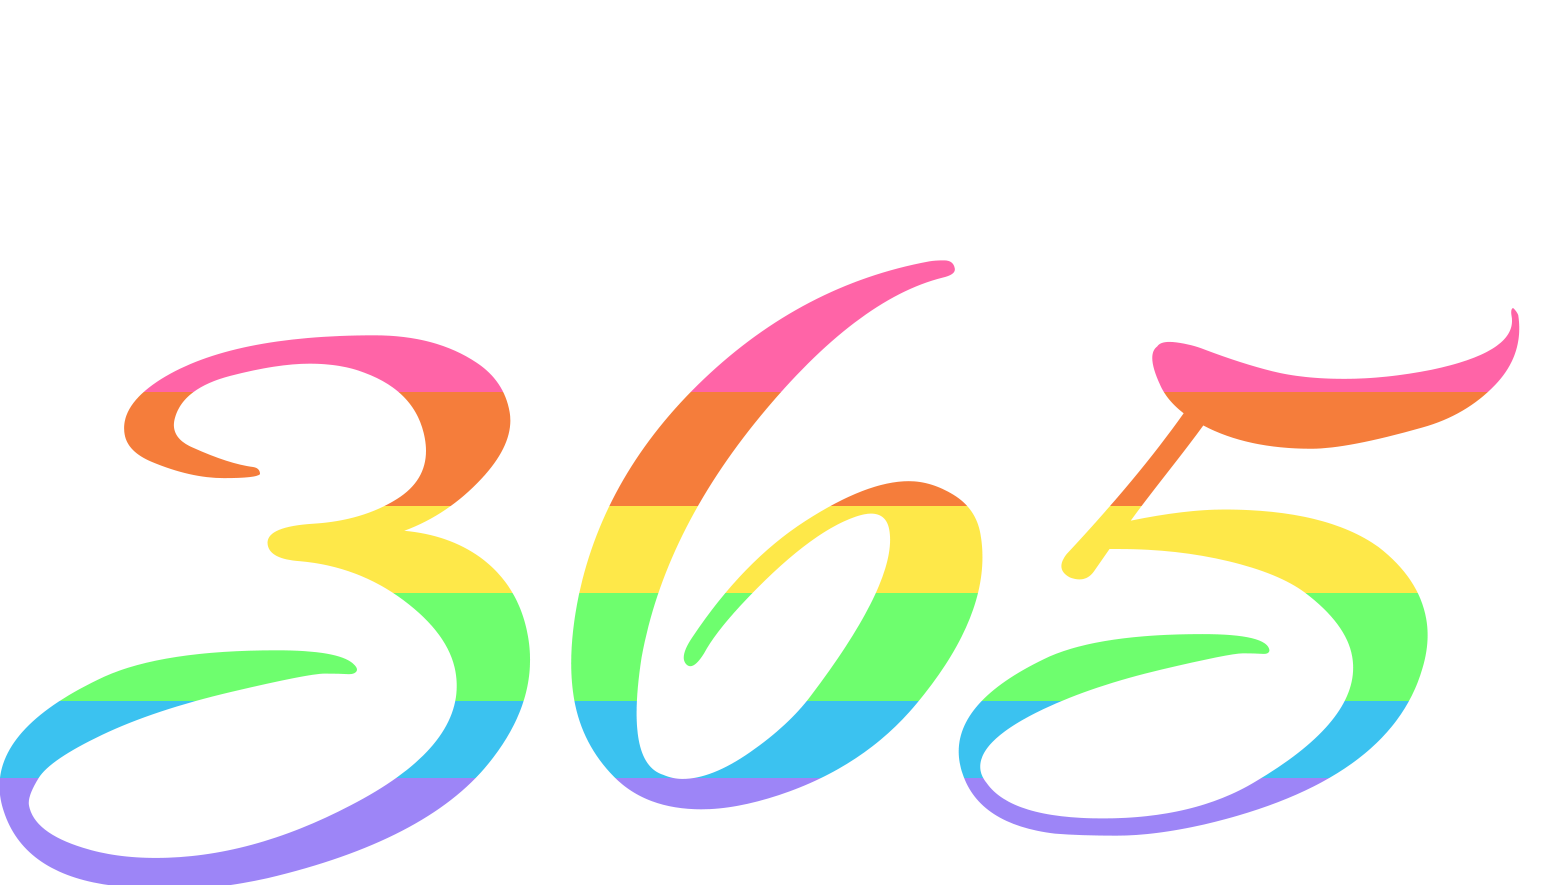 Pride 365